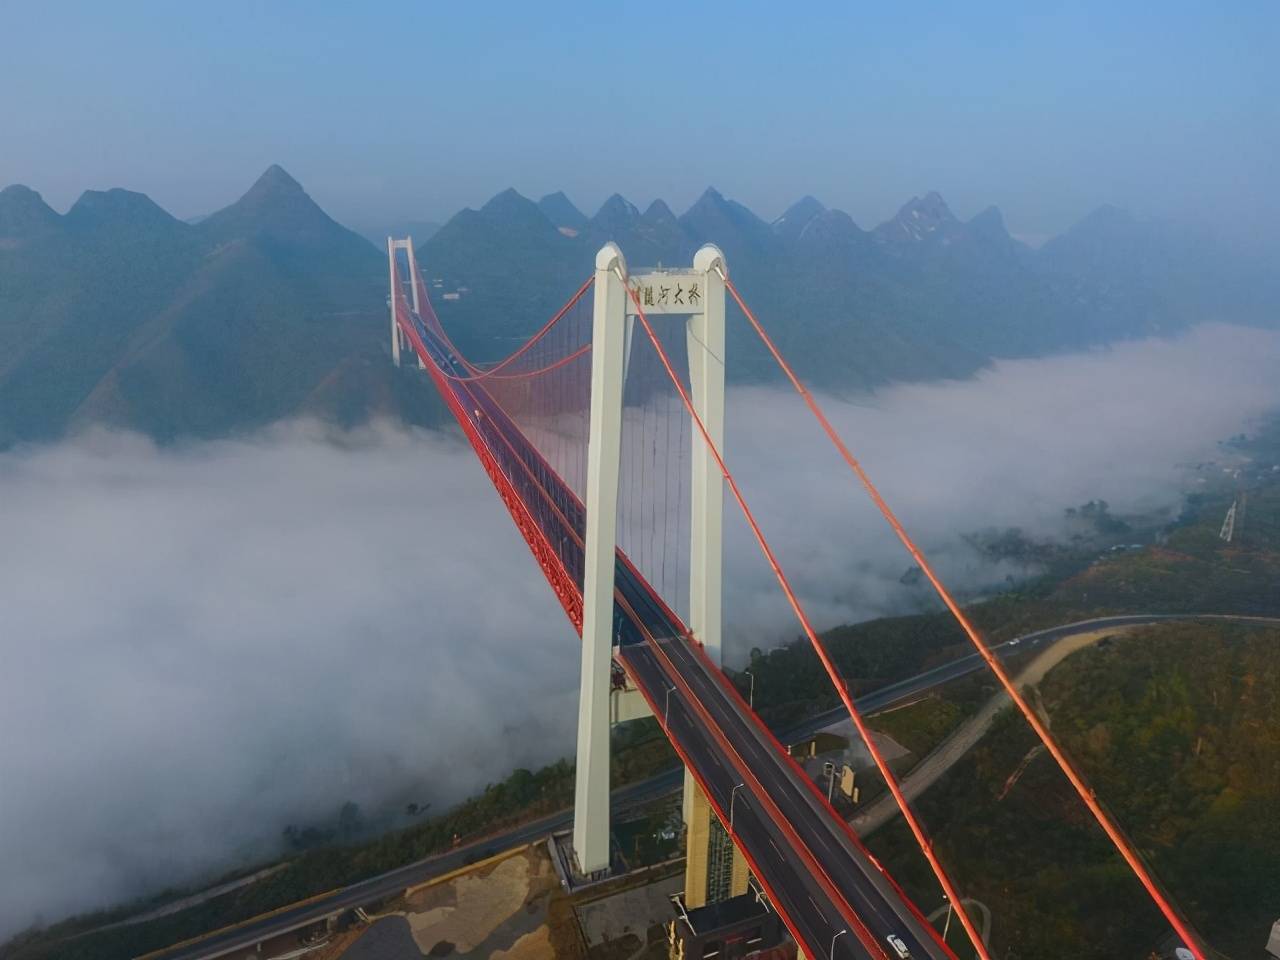 赫章大桥——世界梁式桥梁最高墩,2013年6月建成通车;大桥全长1073.